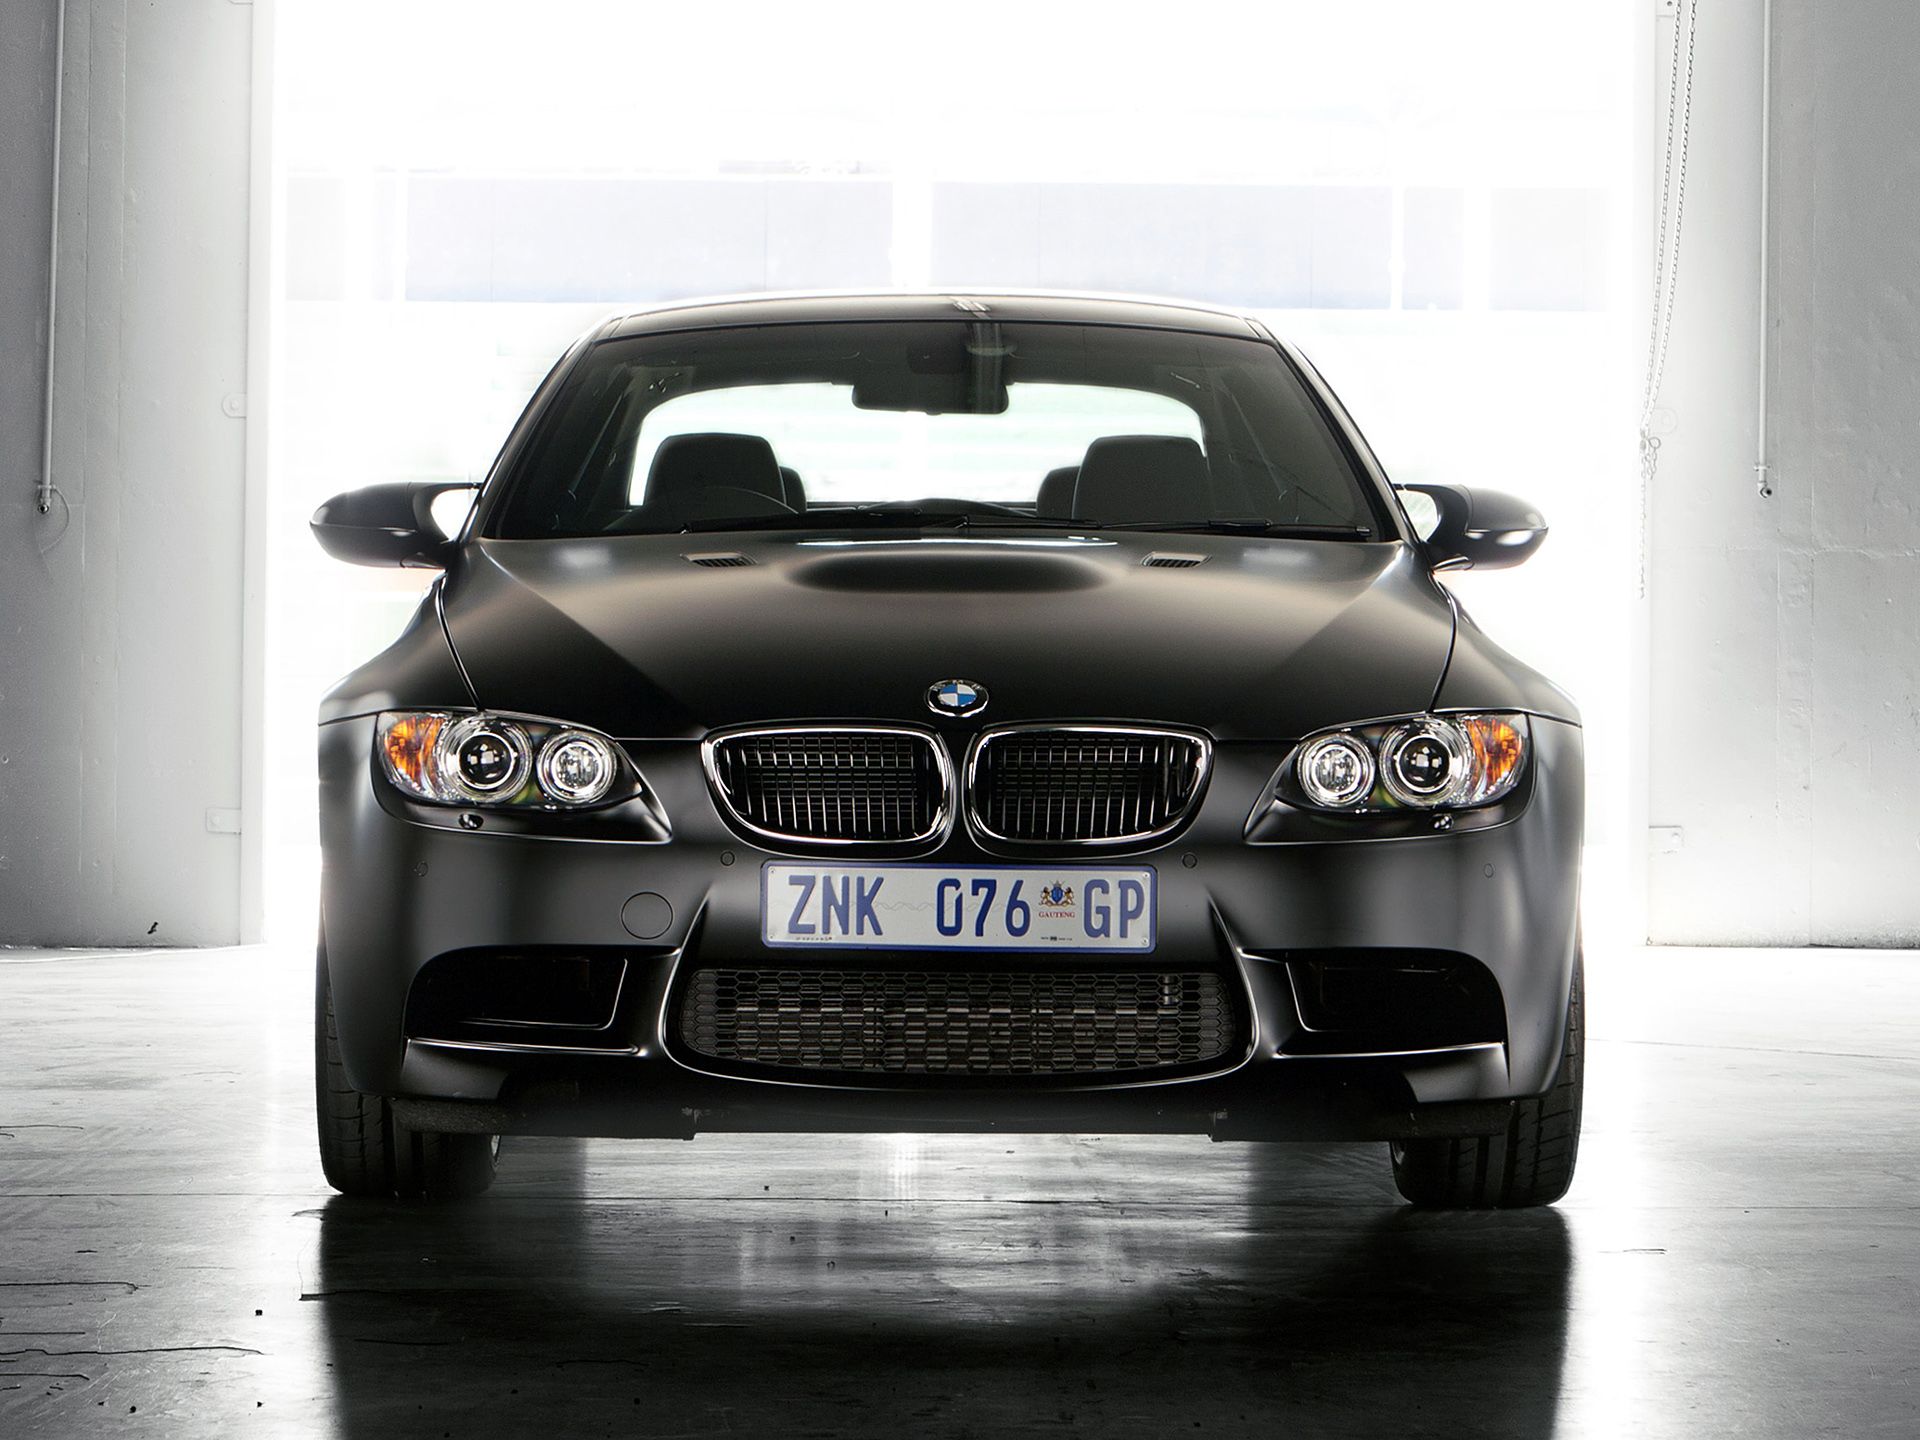 2013-BMW-M3-Frozen-Edition-003-1440